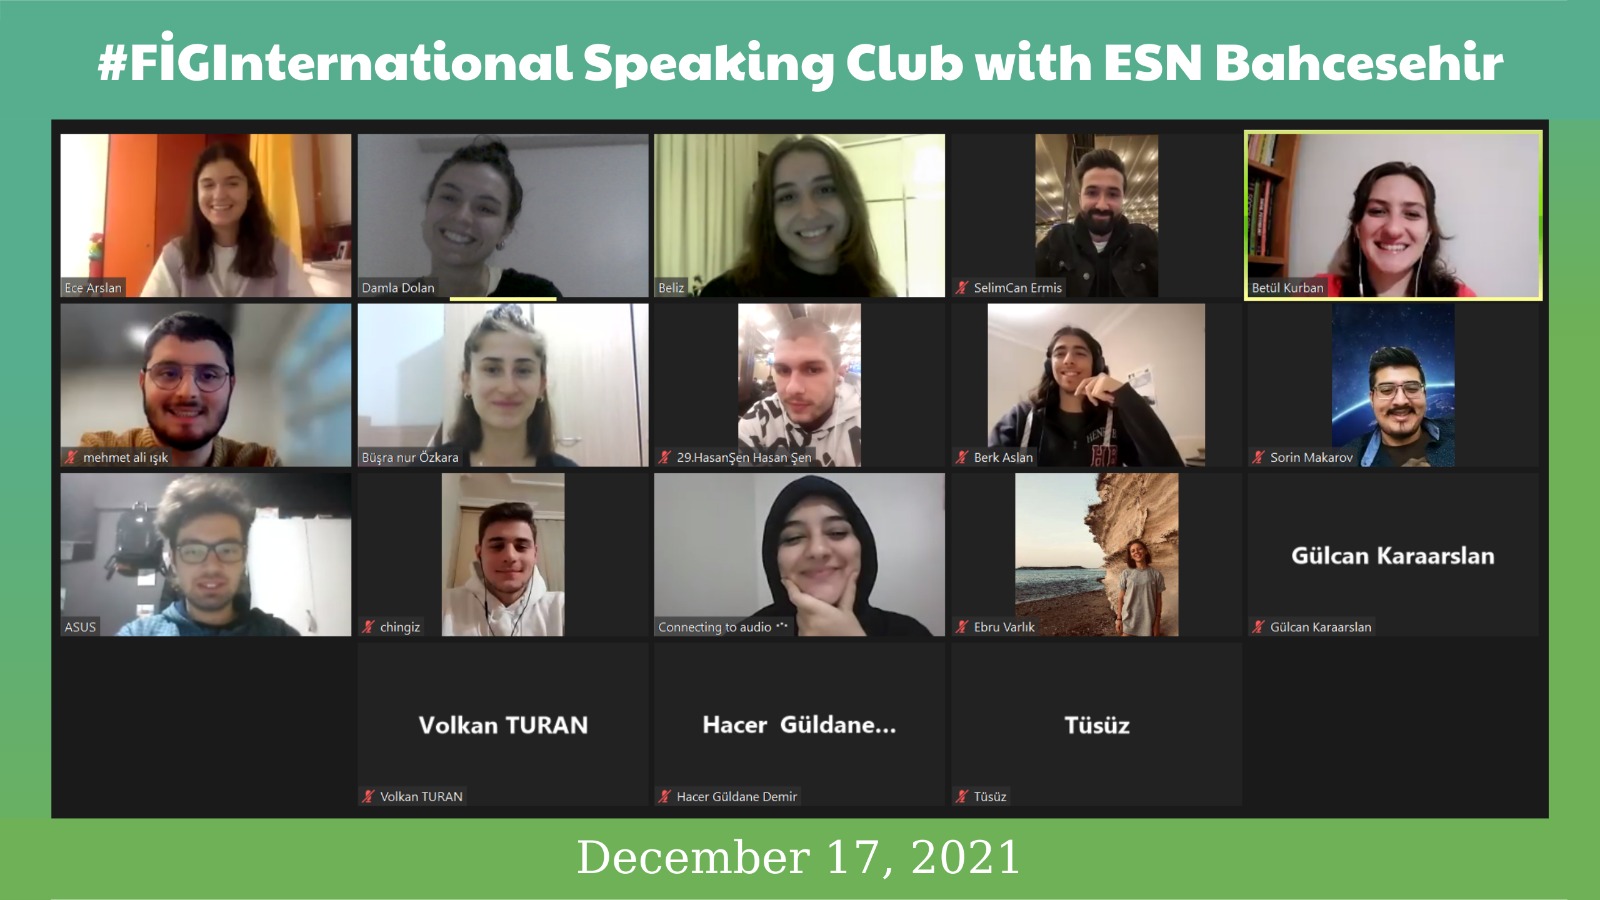  Speaking Club with ESN Bahcesehir